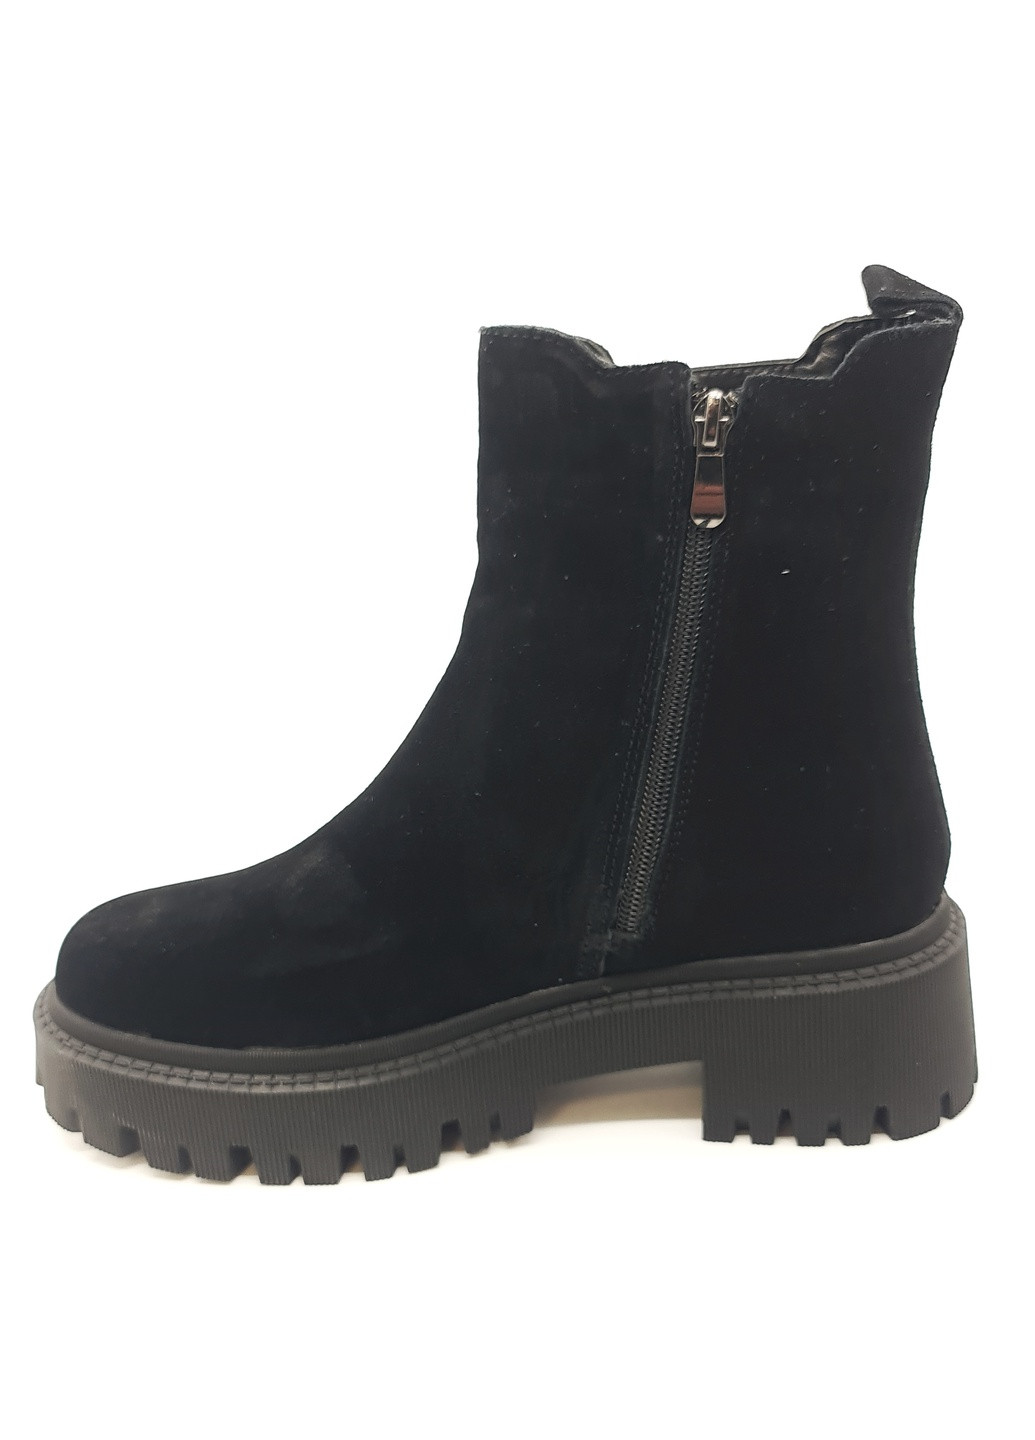 Осенние женские ботинки зимние черные замшевые ii-11-16 23 см(р) It is